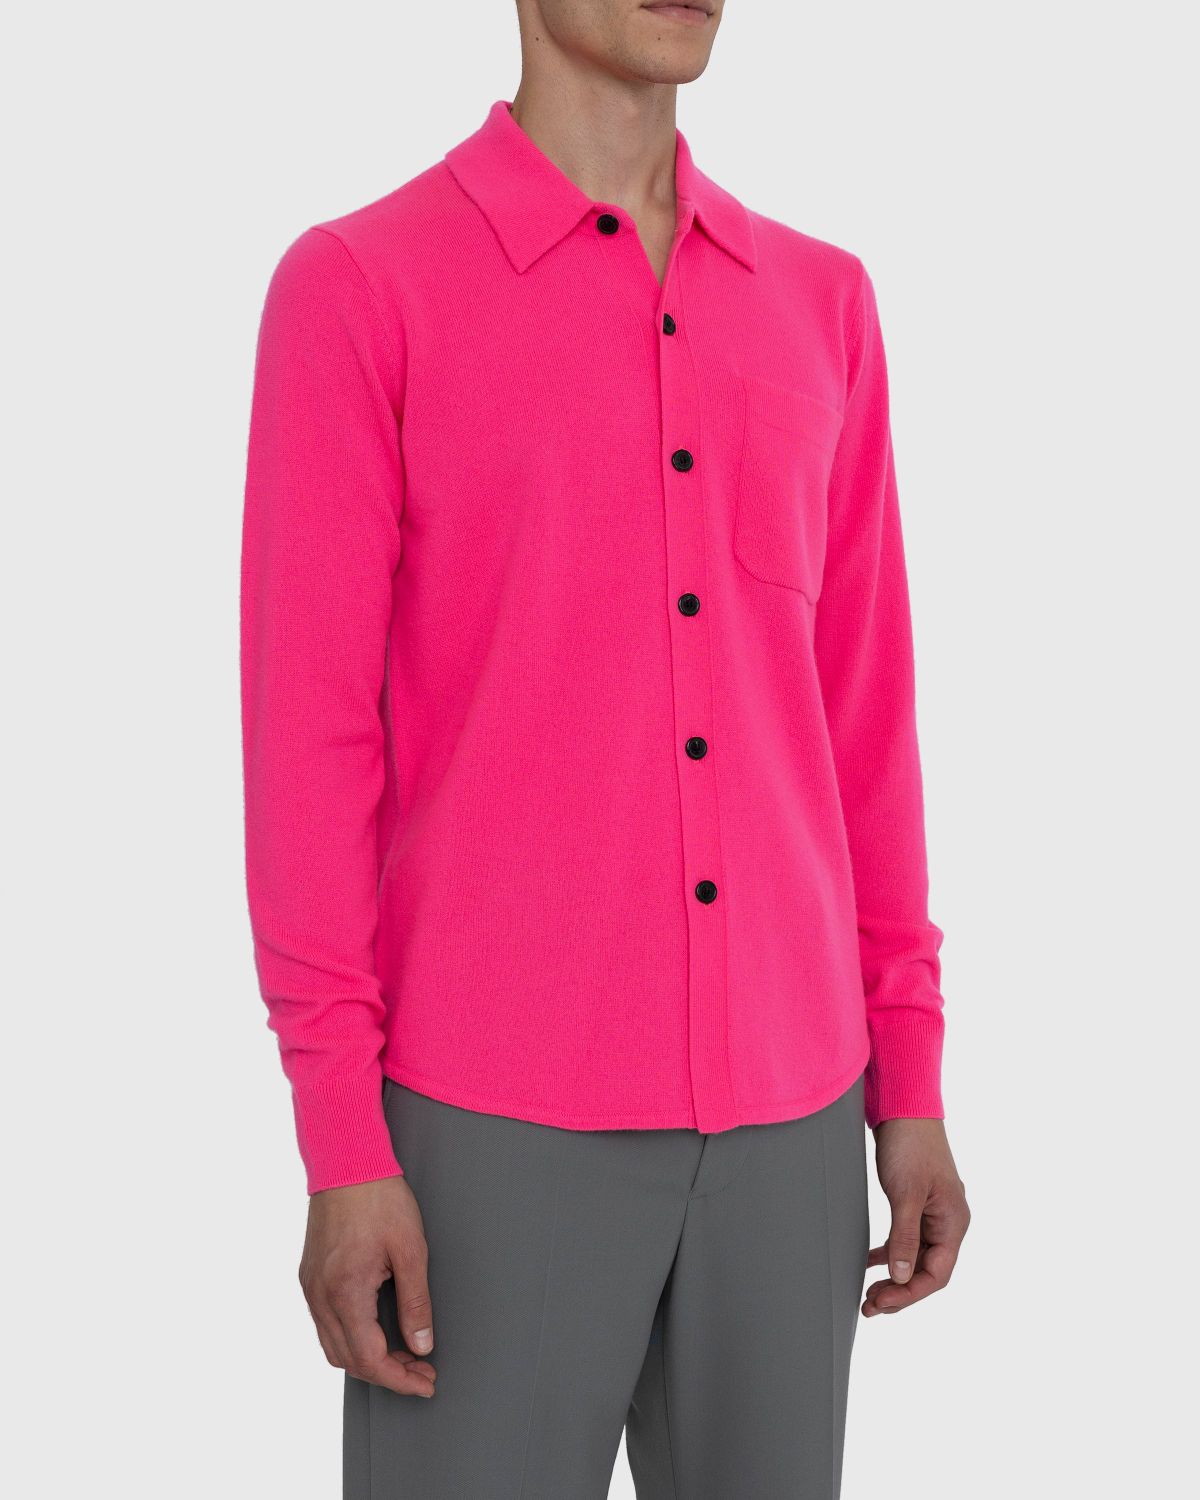 Dries van Noten – Never Cardigan - Knitwear - Pink - Image 3